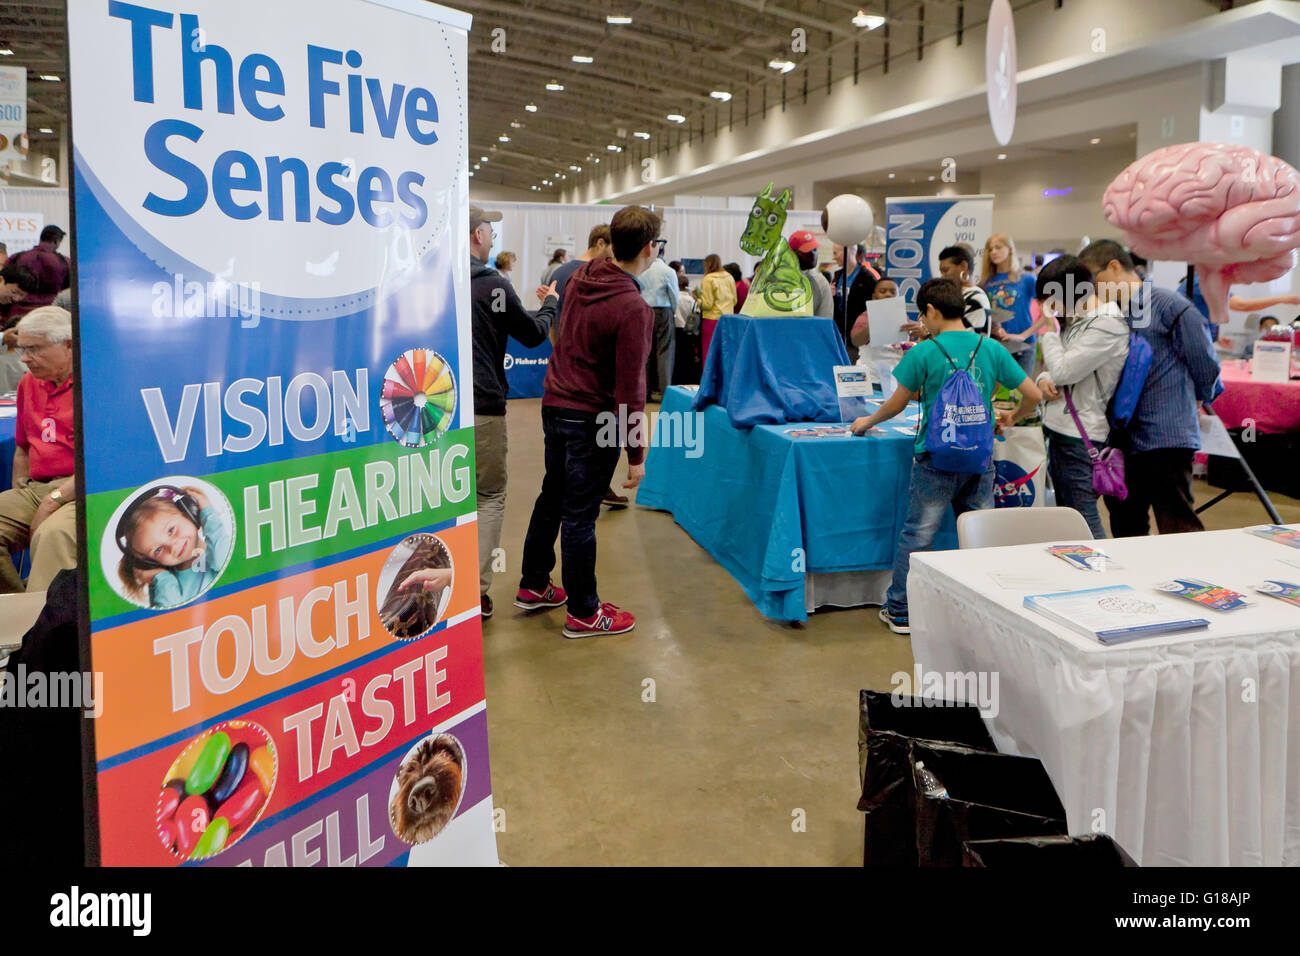 Les cinq sens gare à science fair - USA Banque D'Images